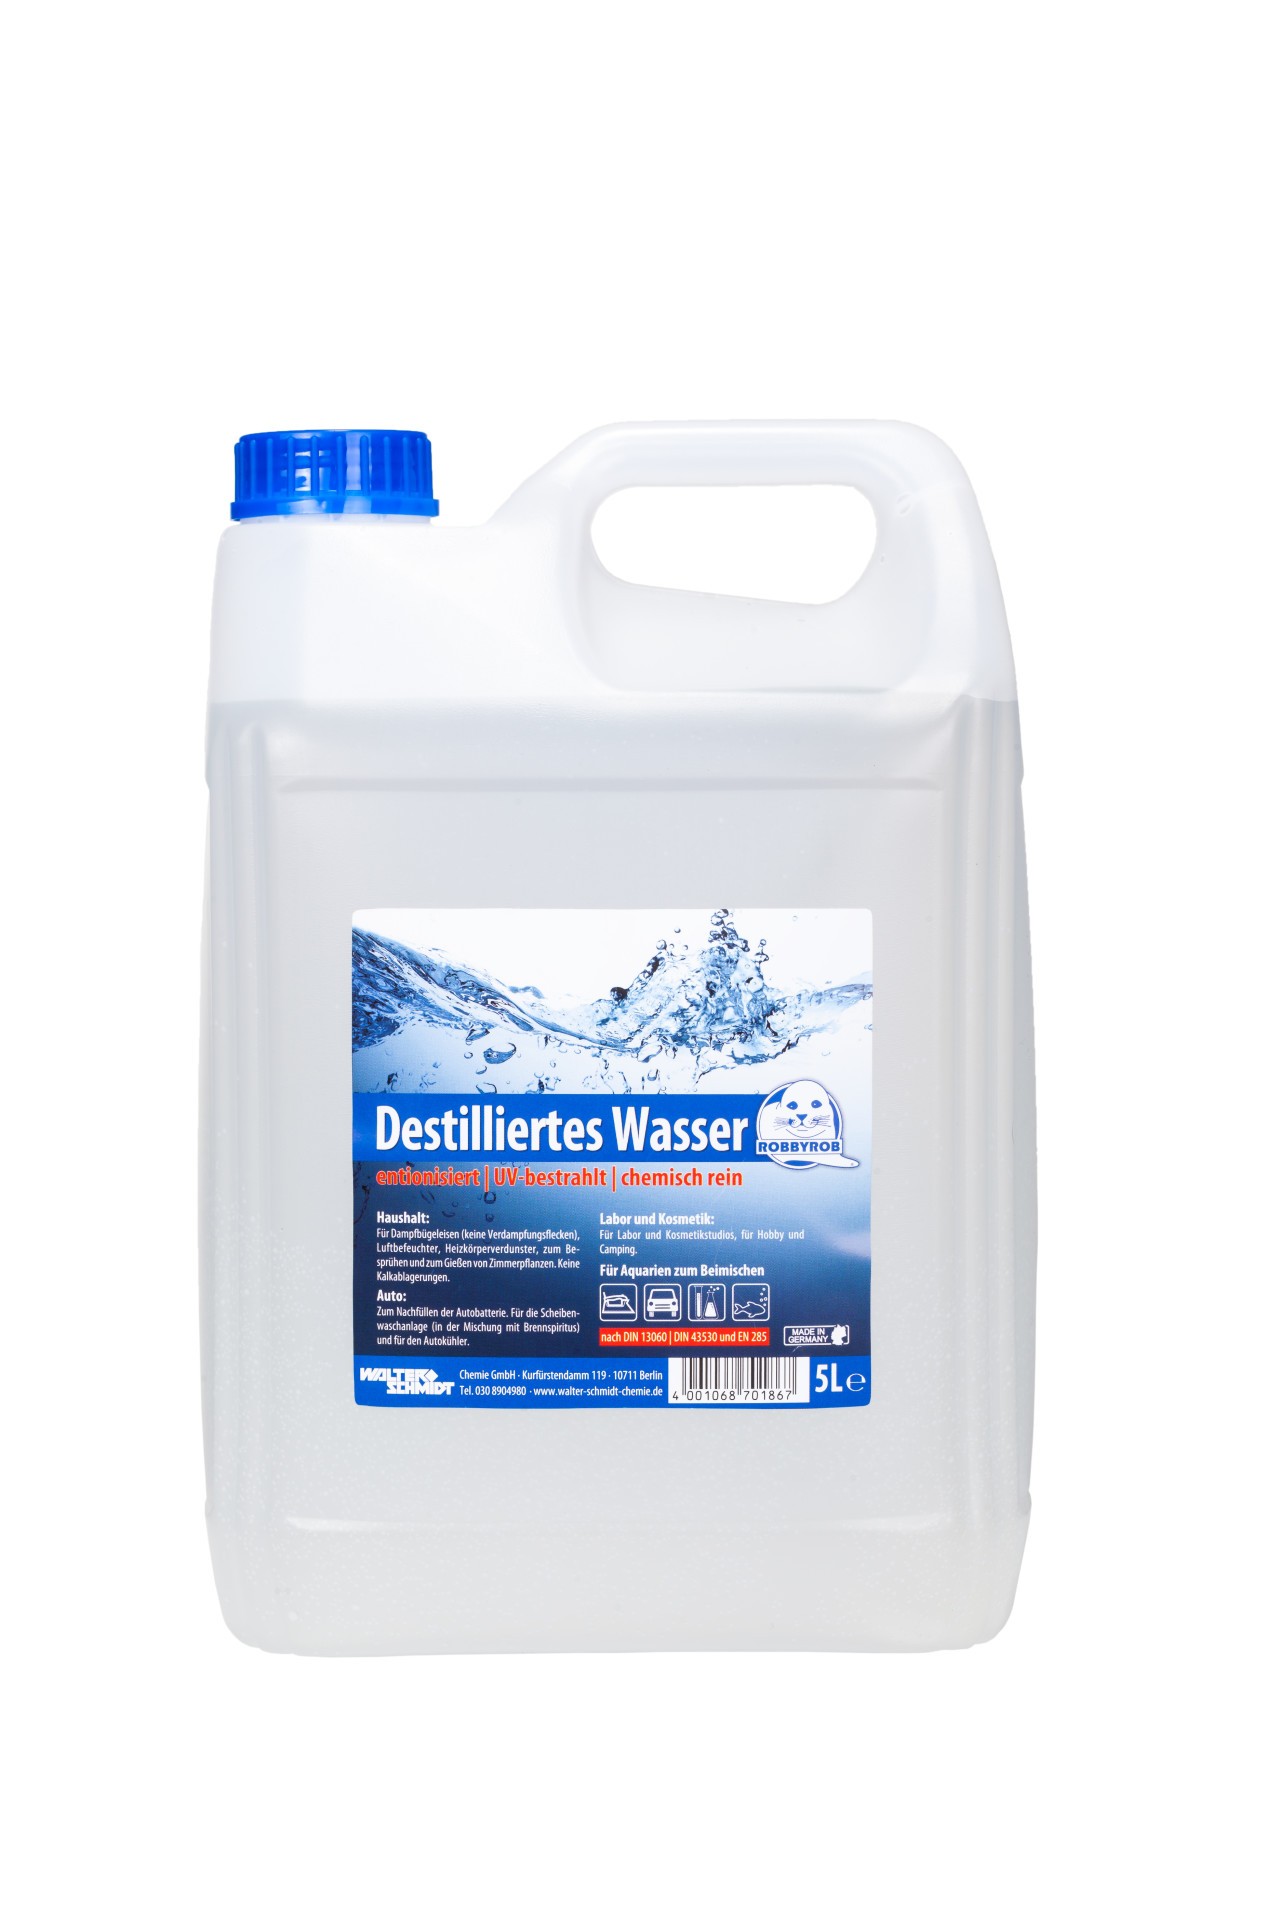 Walterschmidt, Destilliertes Wasser (5 L)